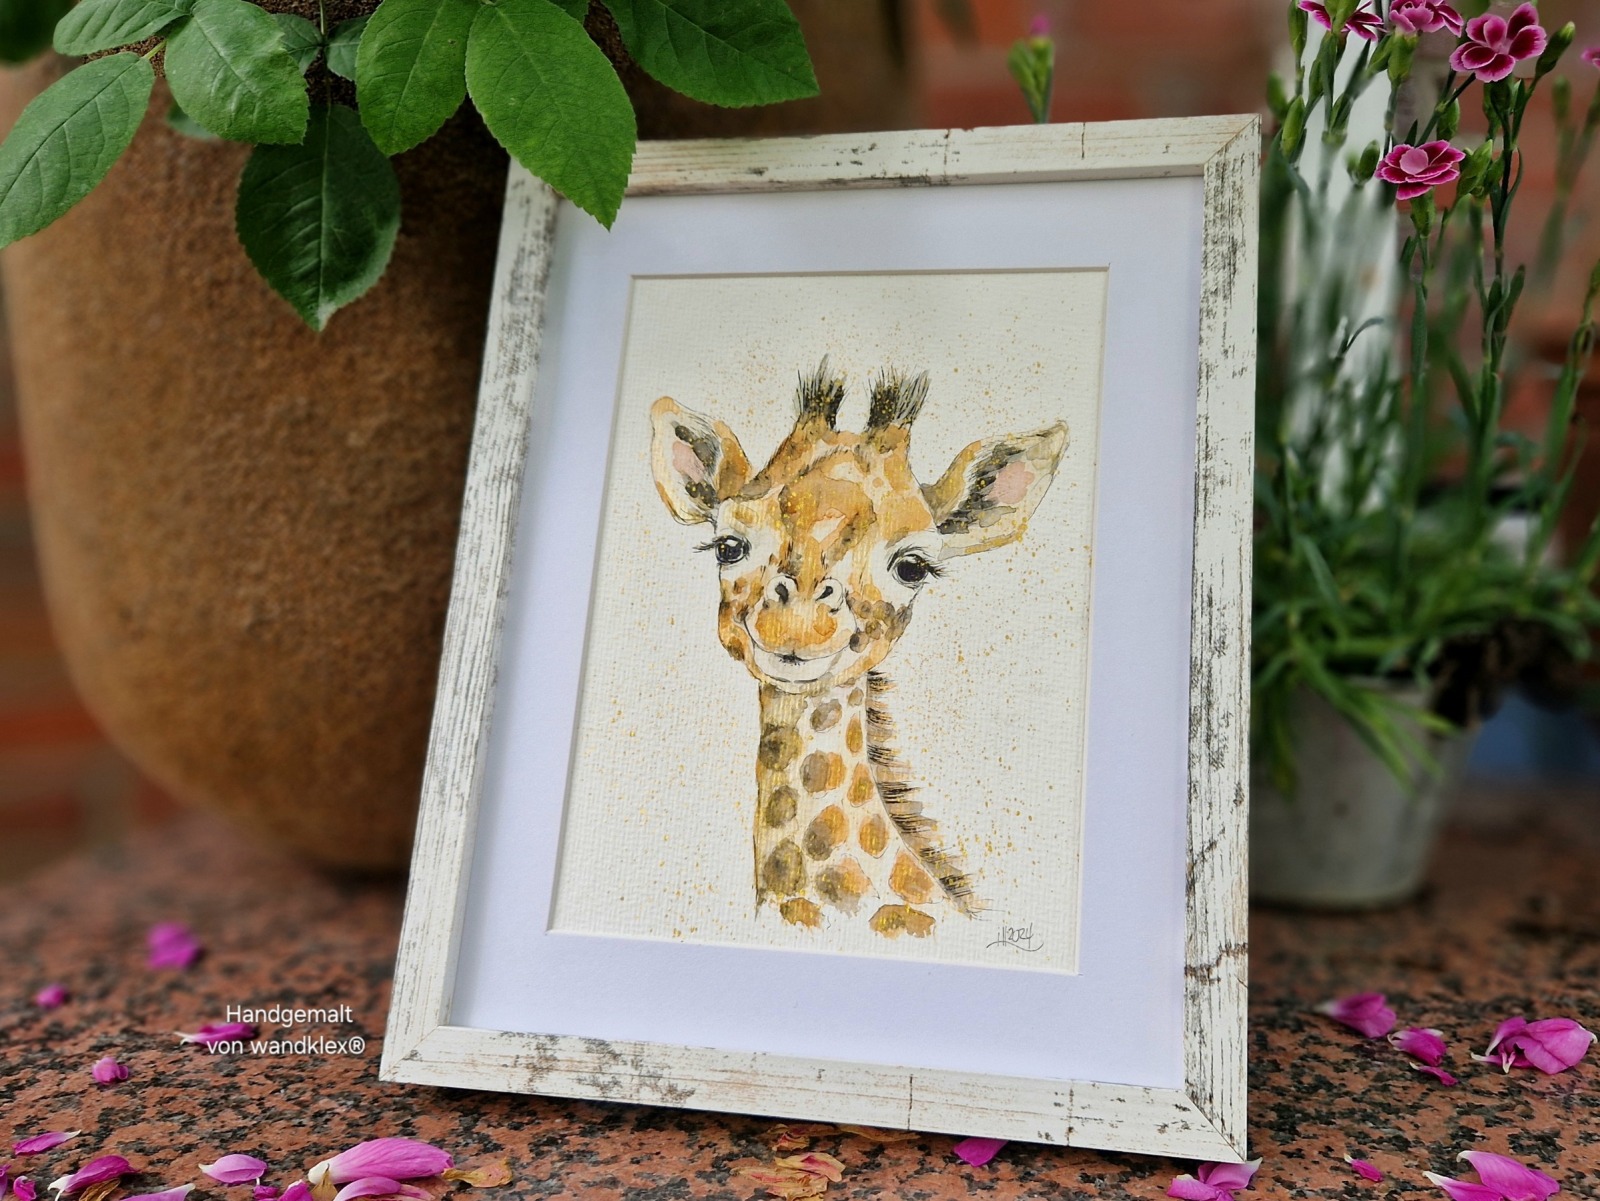 Junge Giraffe Emil, Illustration handgemalt, gerahmt